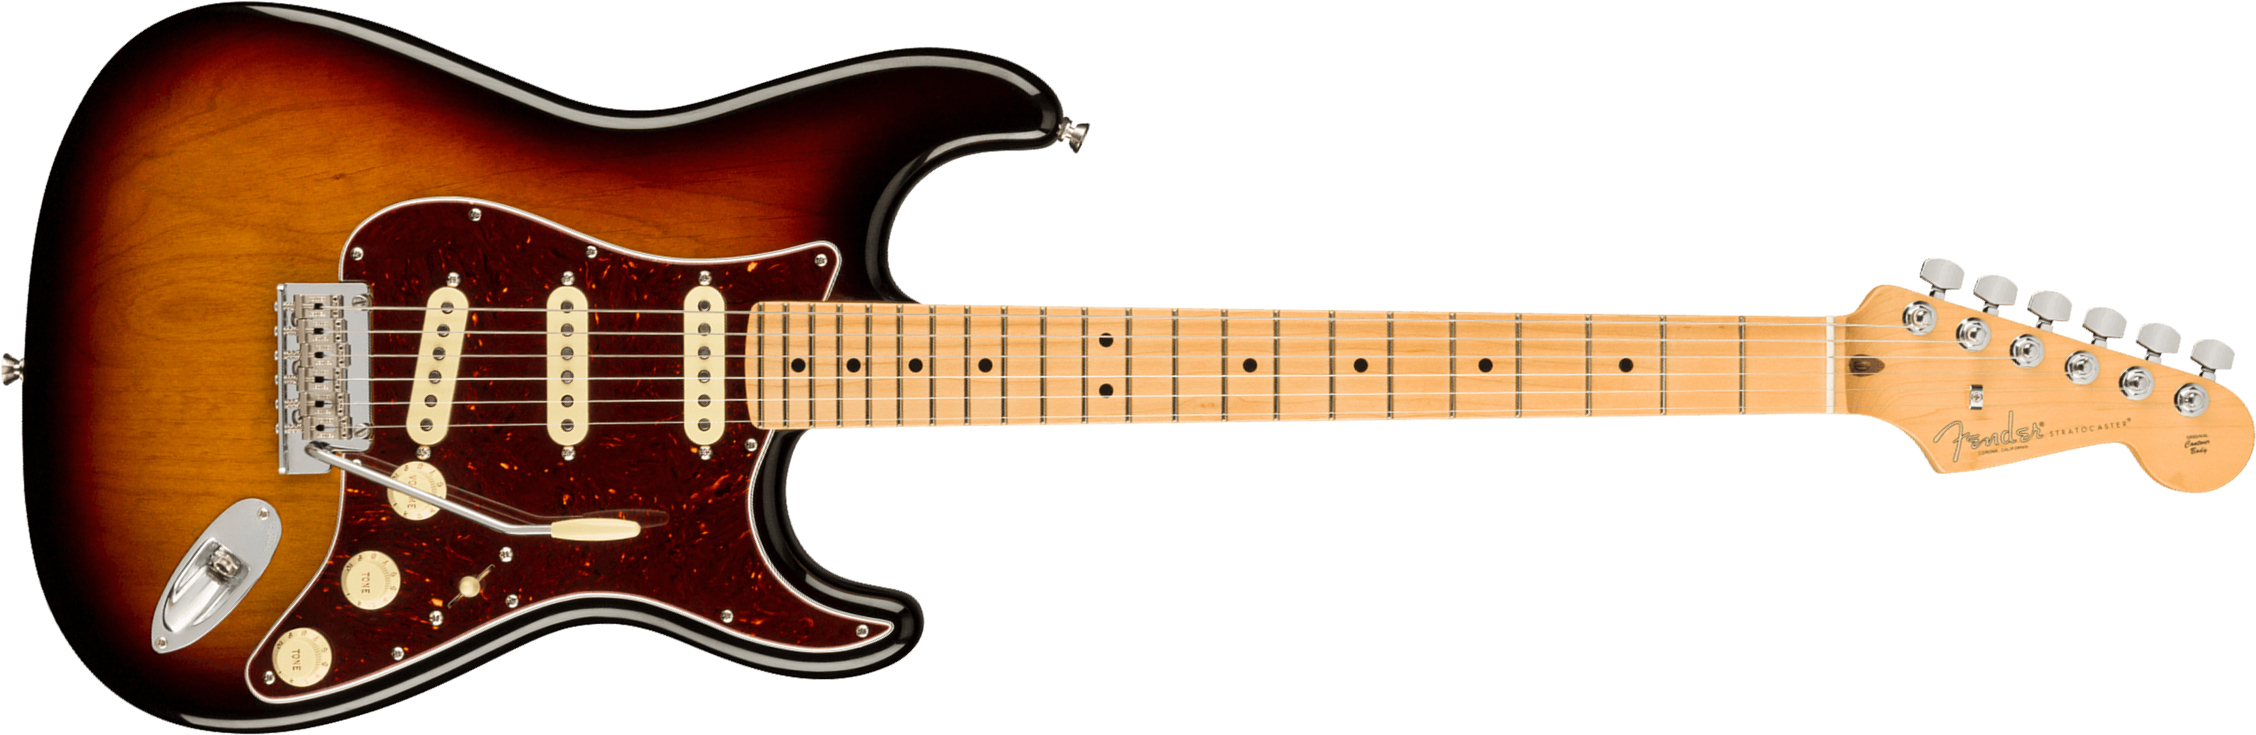 Fender Strat American Professional Ii Usa Mn - 3-color Sunburst - Guitare Électrique Forme Str - Main picture